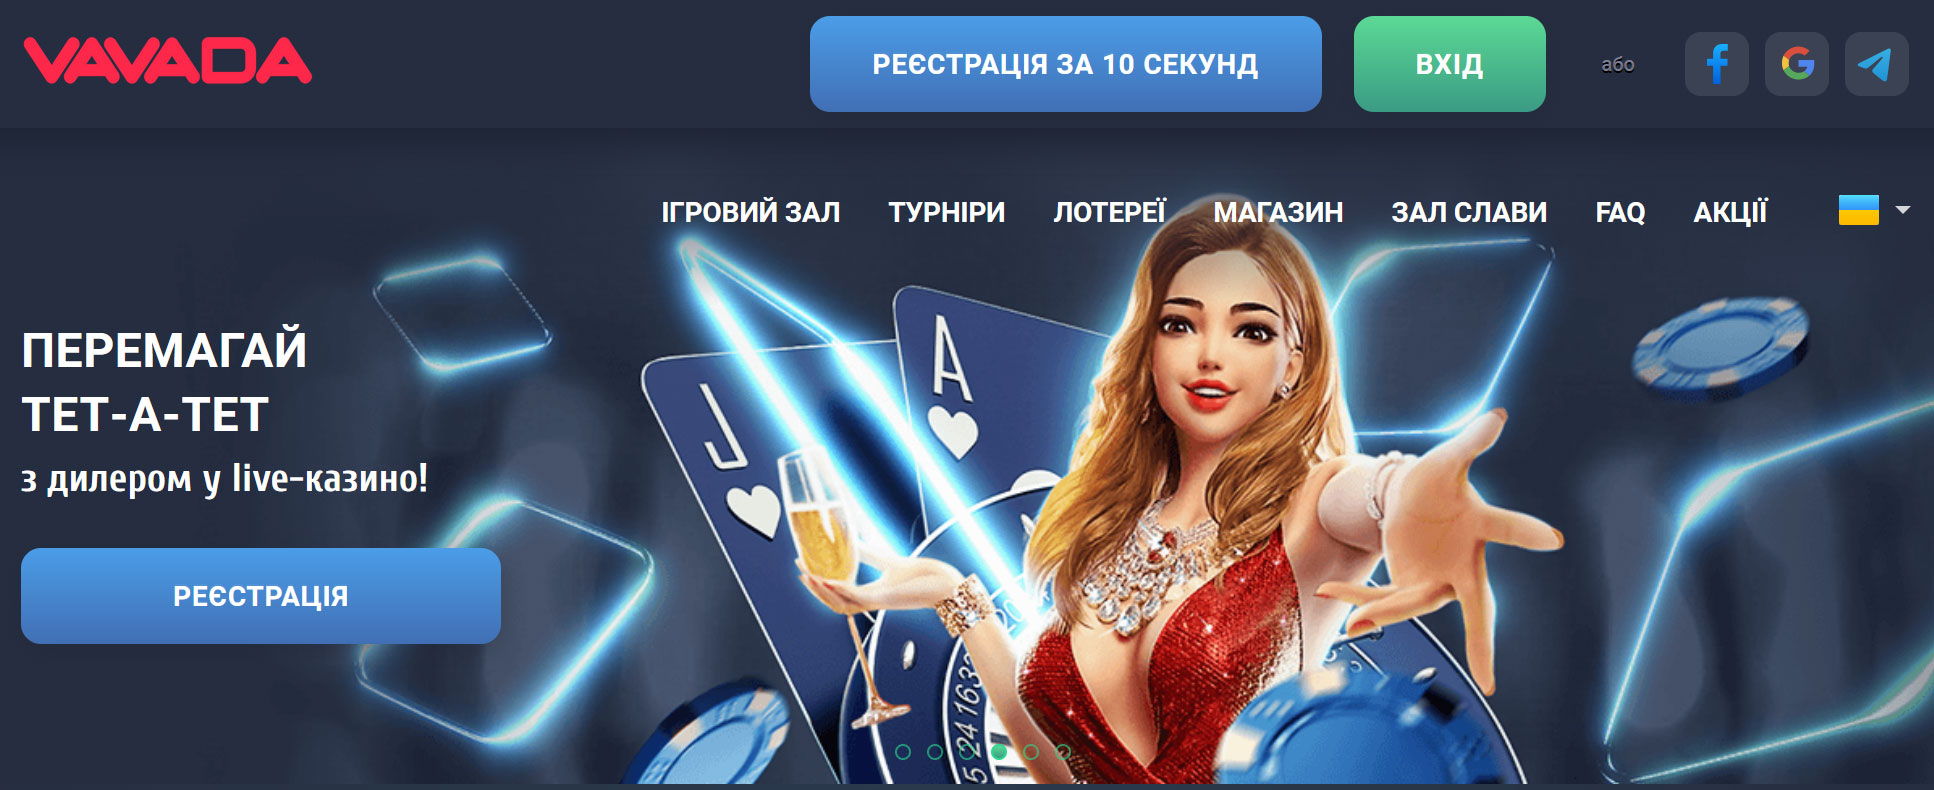 Бездепозитный бонус 500 рублей в казино Flint Casino eXpert.